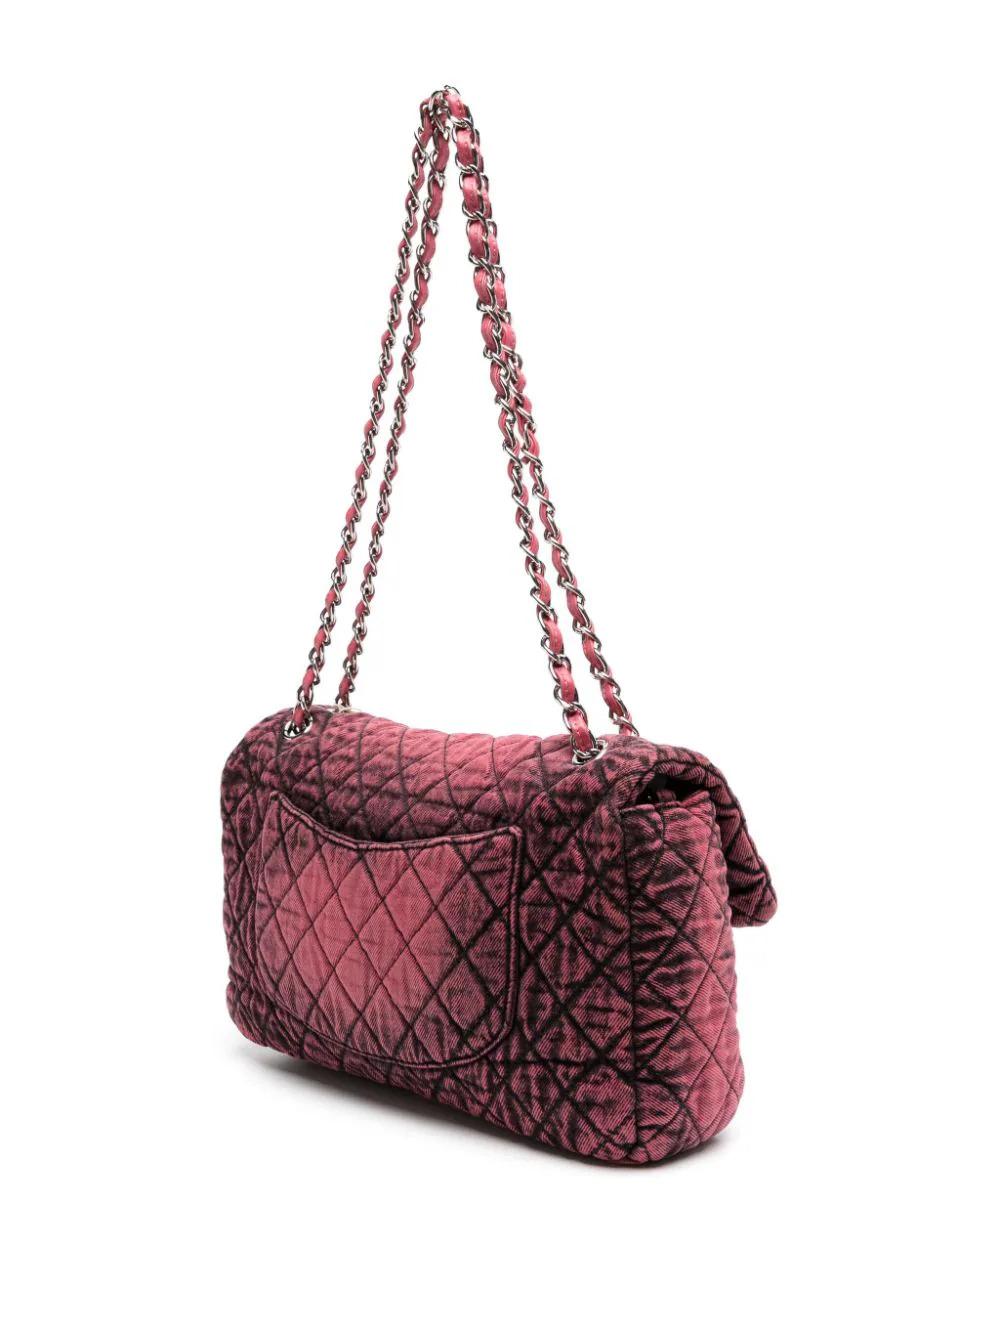 Le sac à rabat de Chanel a marqué la libération de la mode : c'était le premier sac fabriqué avec une bandoulière, libérant les clientes des contraintes de la pochette peu pratique.

Fabriqué de manière experte à partir des matériaux les plus fins,